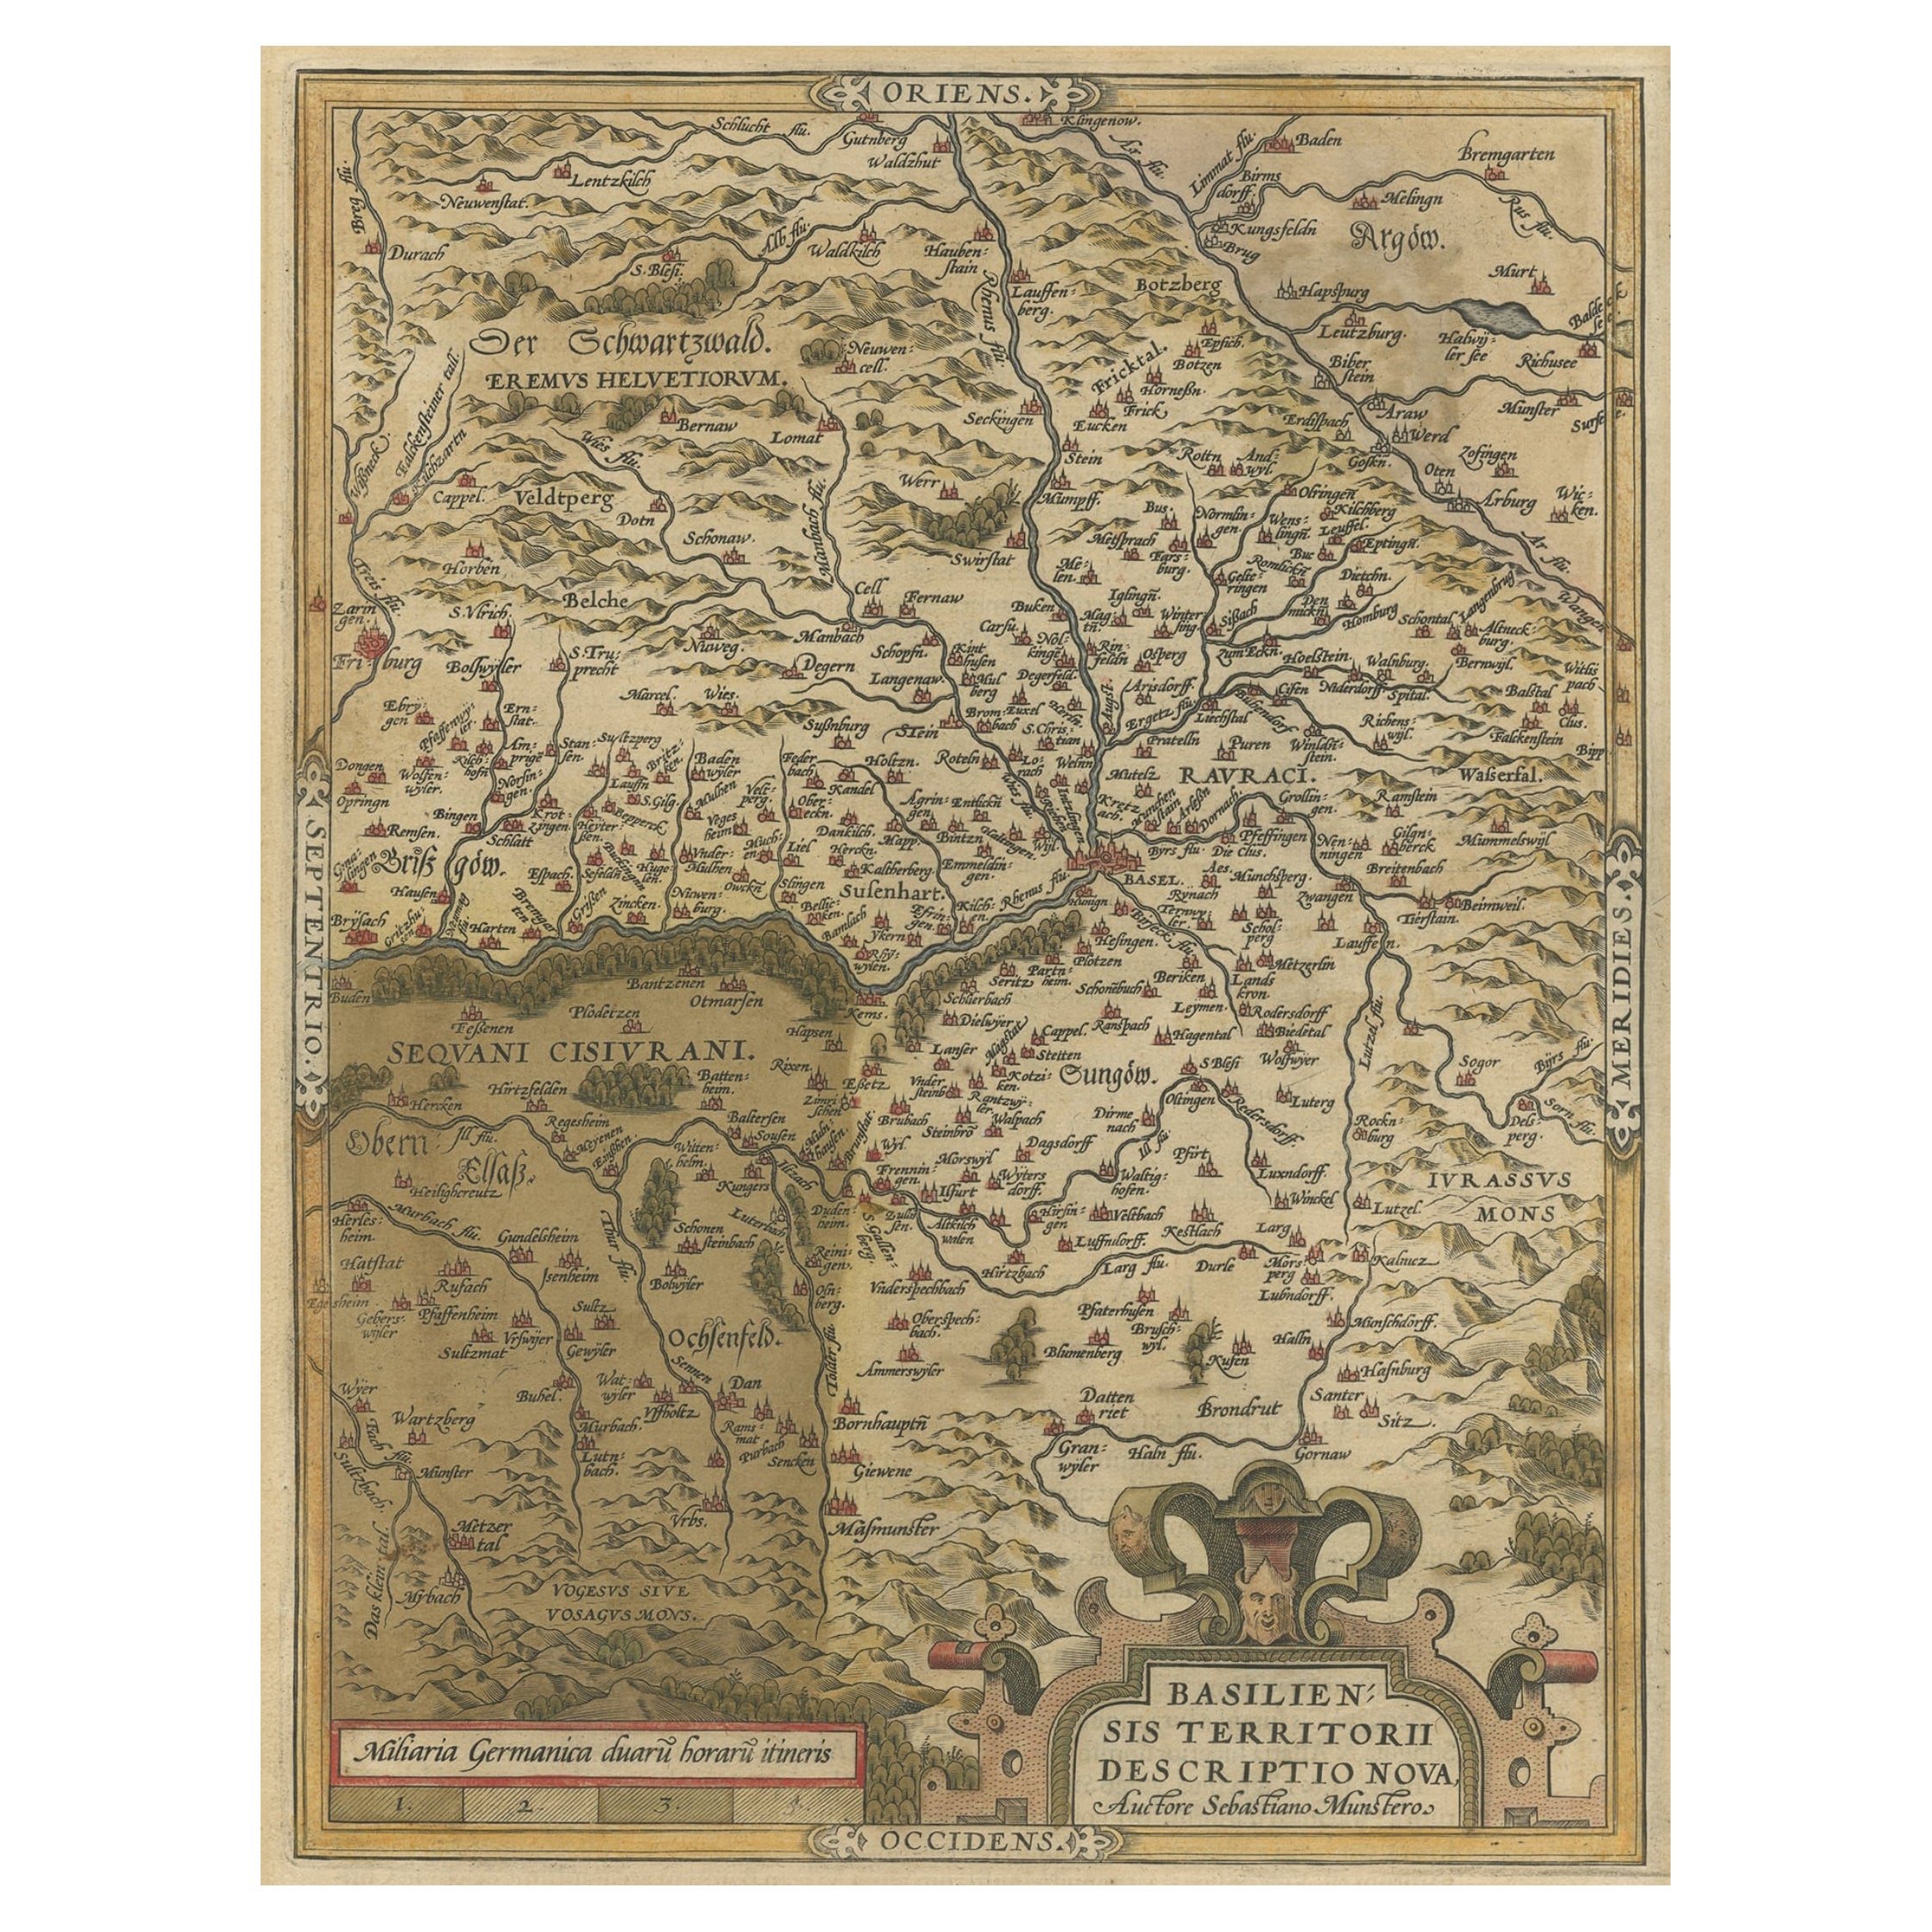 Originale handkolorierte Originalkarte der Region Basel, Schweiz, ca. 1578